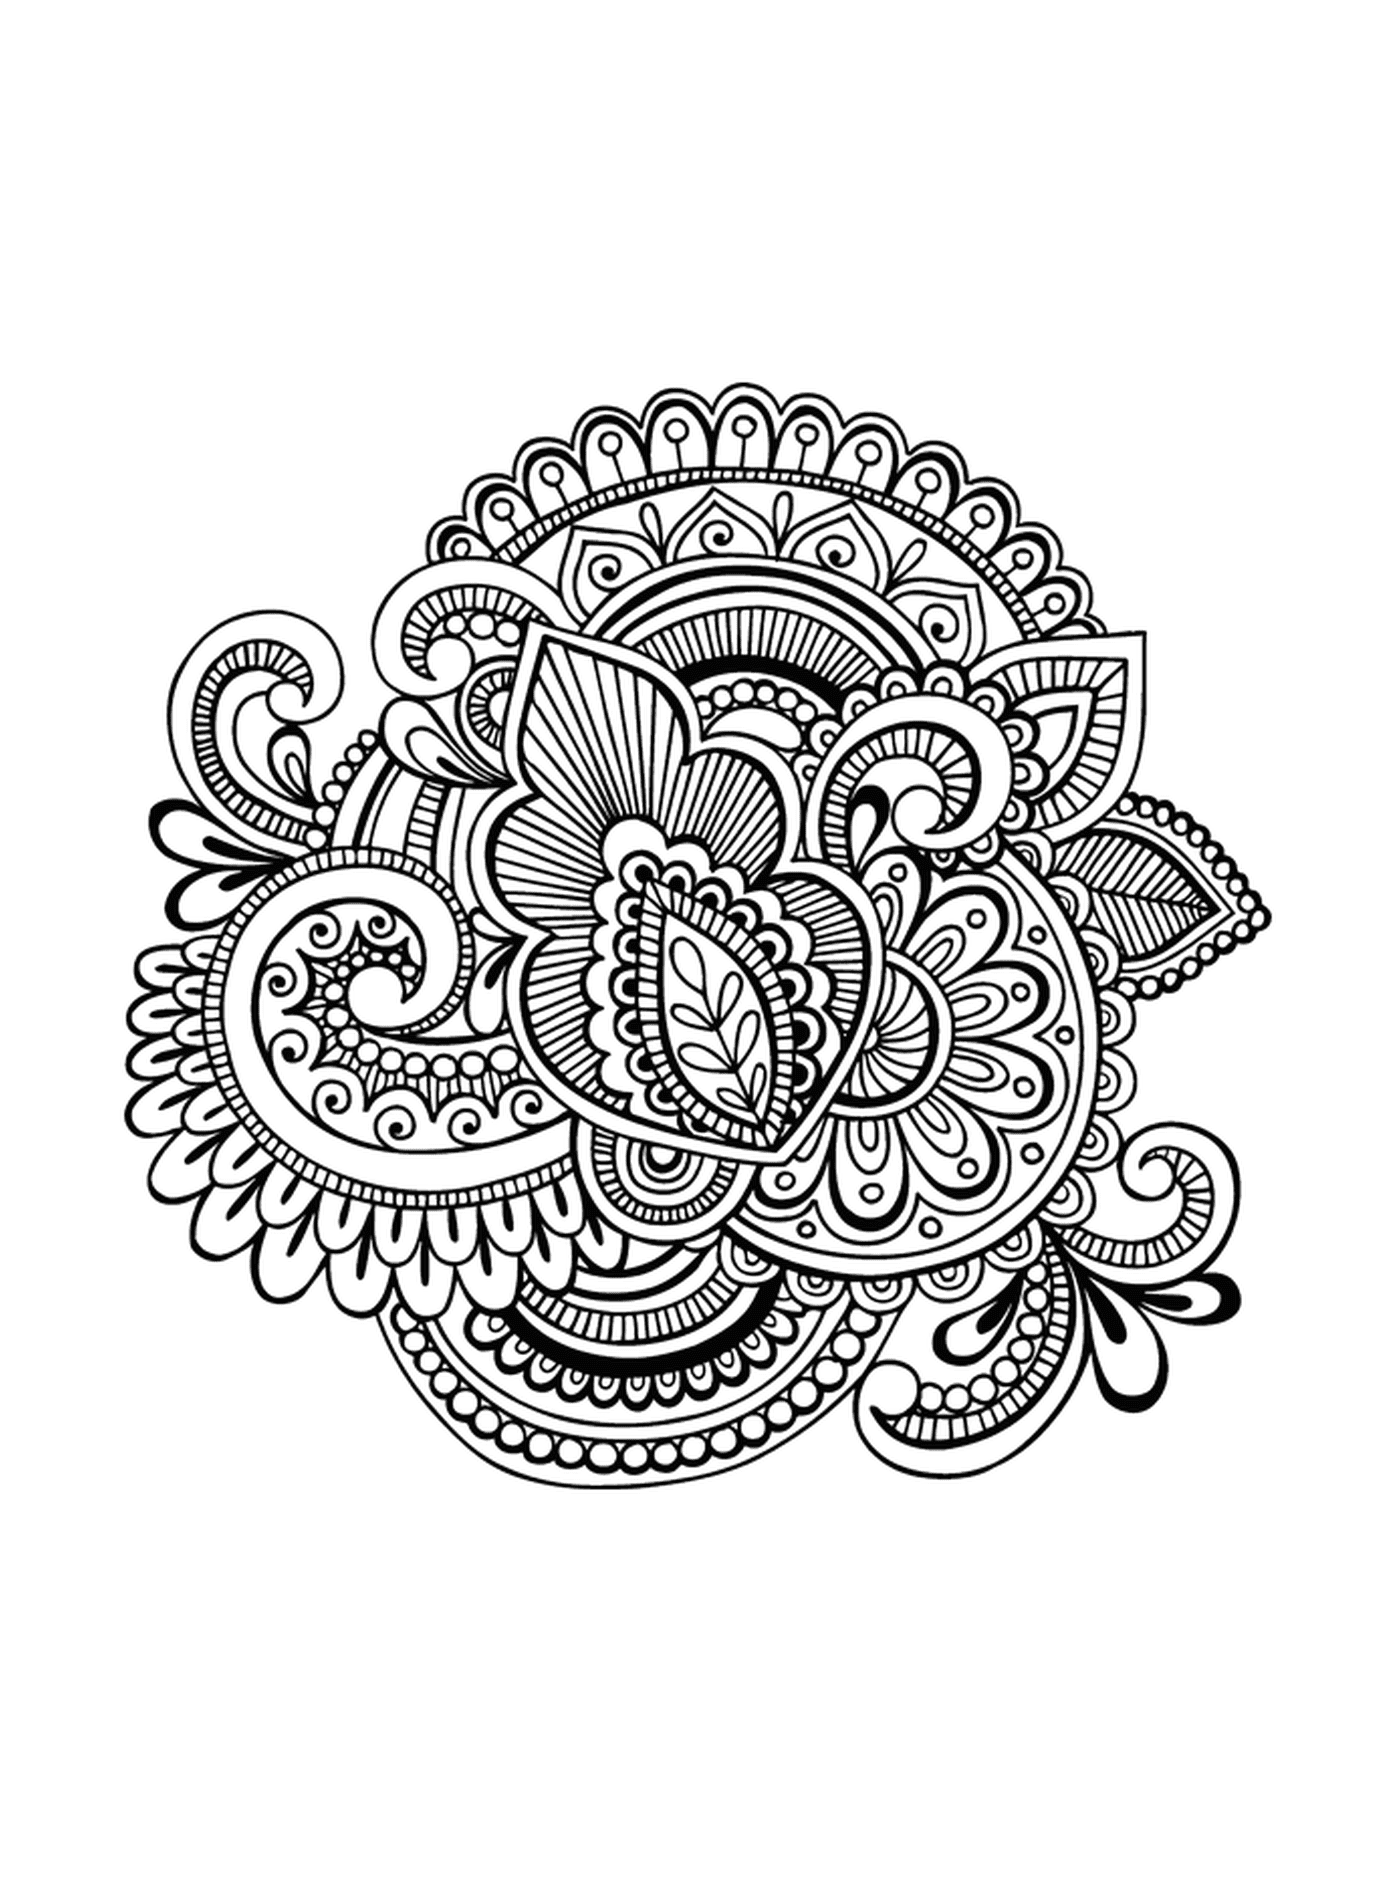   Un motif floral complexe en noir et blanc 